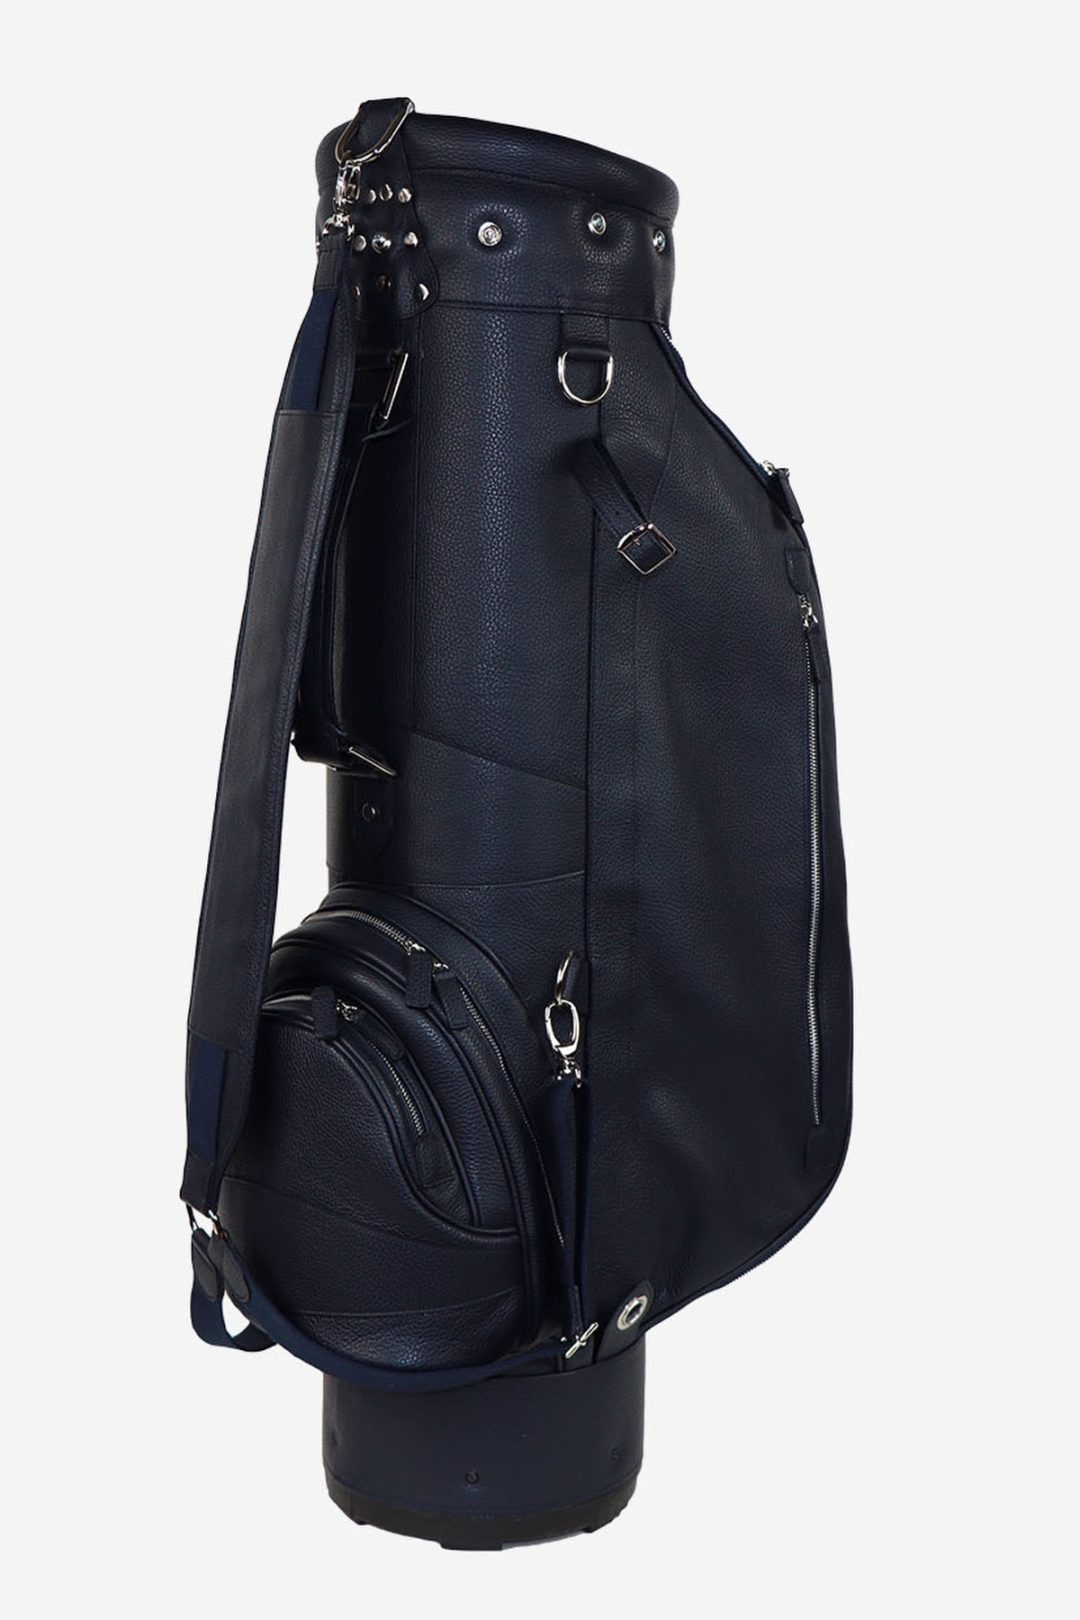 Prada Black Tessuto and Saffiano Leather Golf Bag